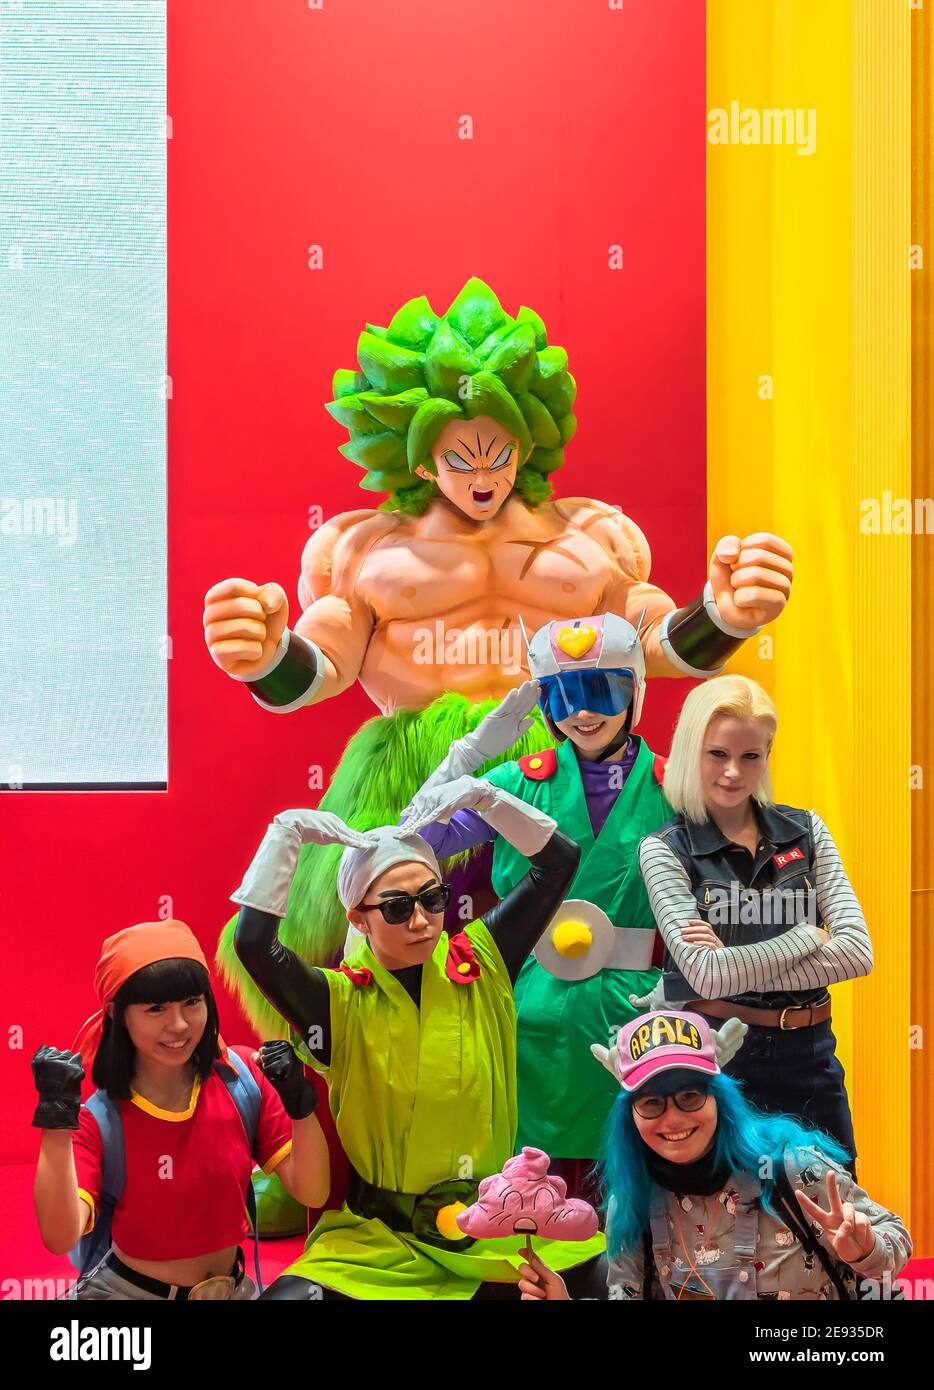 chiba, giappone - dicembre 22 2018: Gruppo di giovani cosplayers che indossano costumi e parrucche dei personaggi della serie giapponese manga e anime di Drago Foto Stock